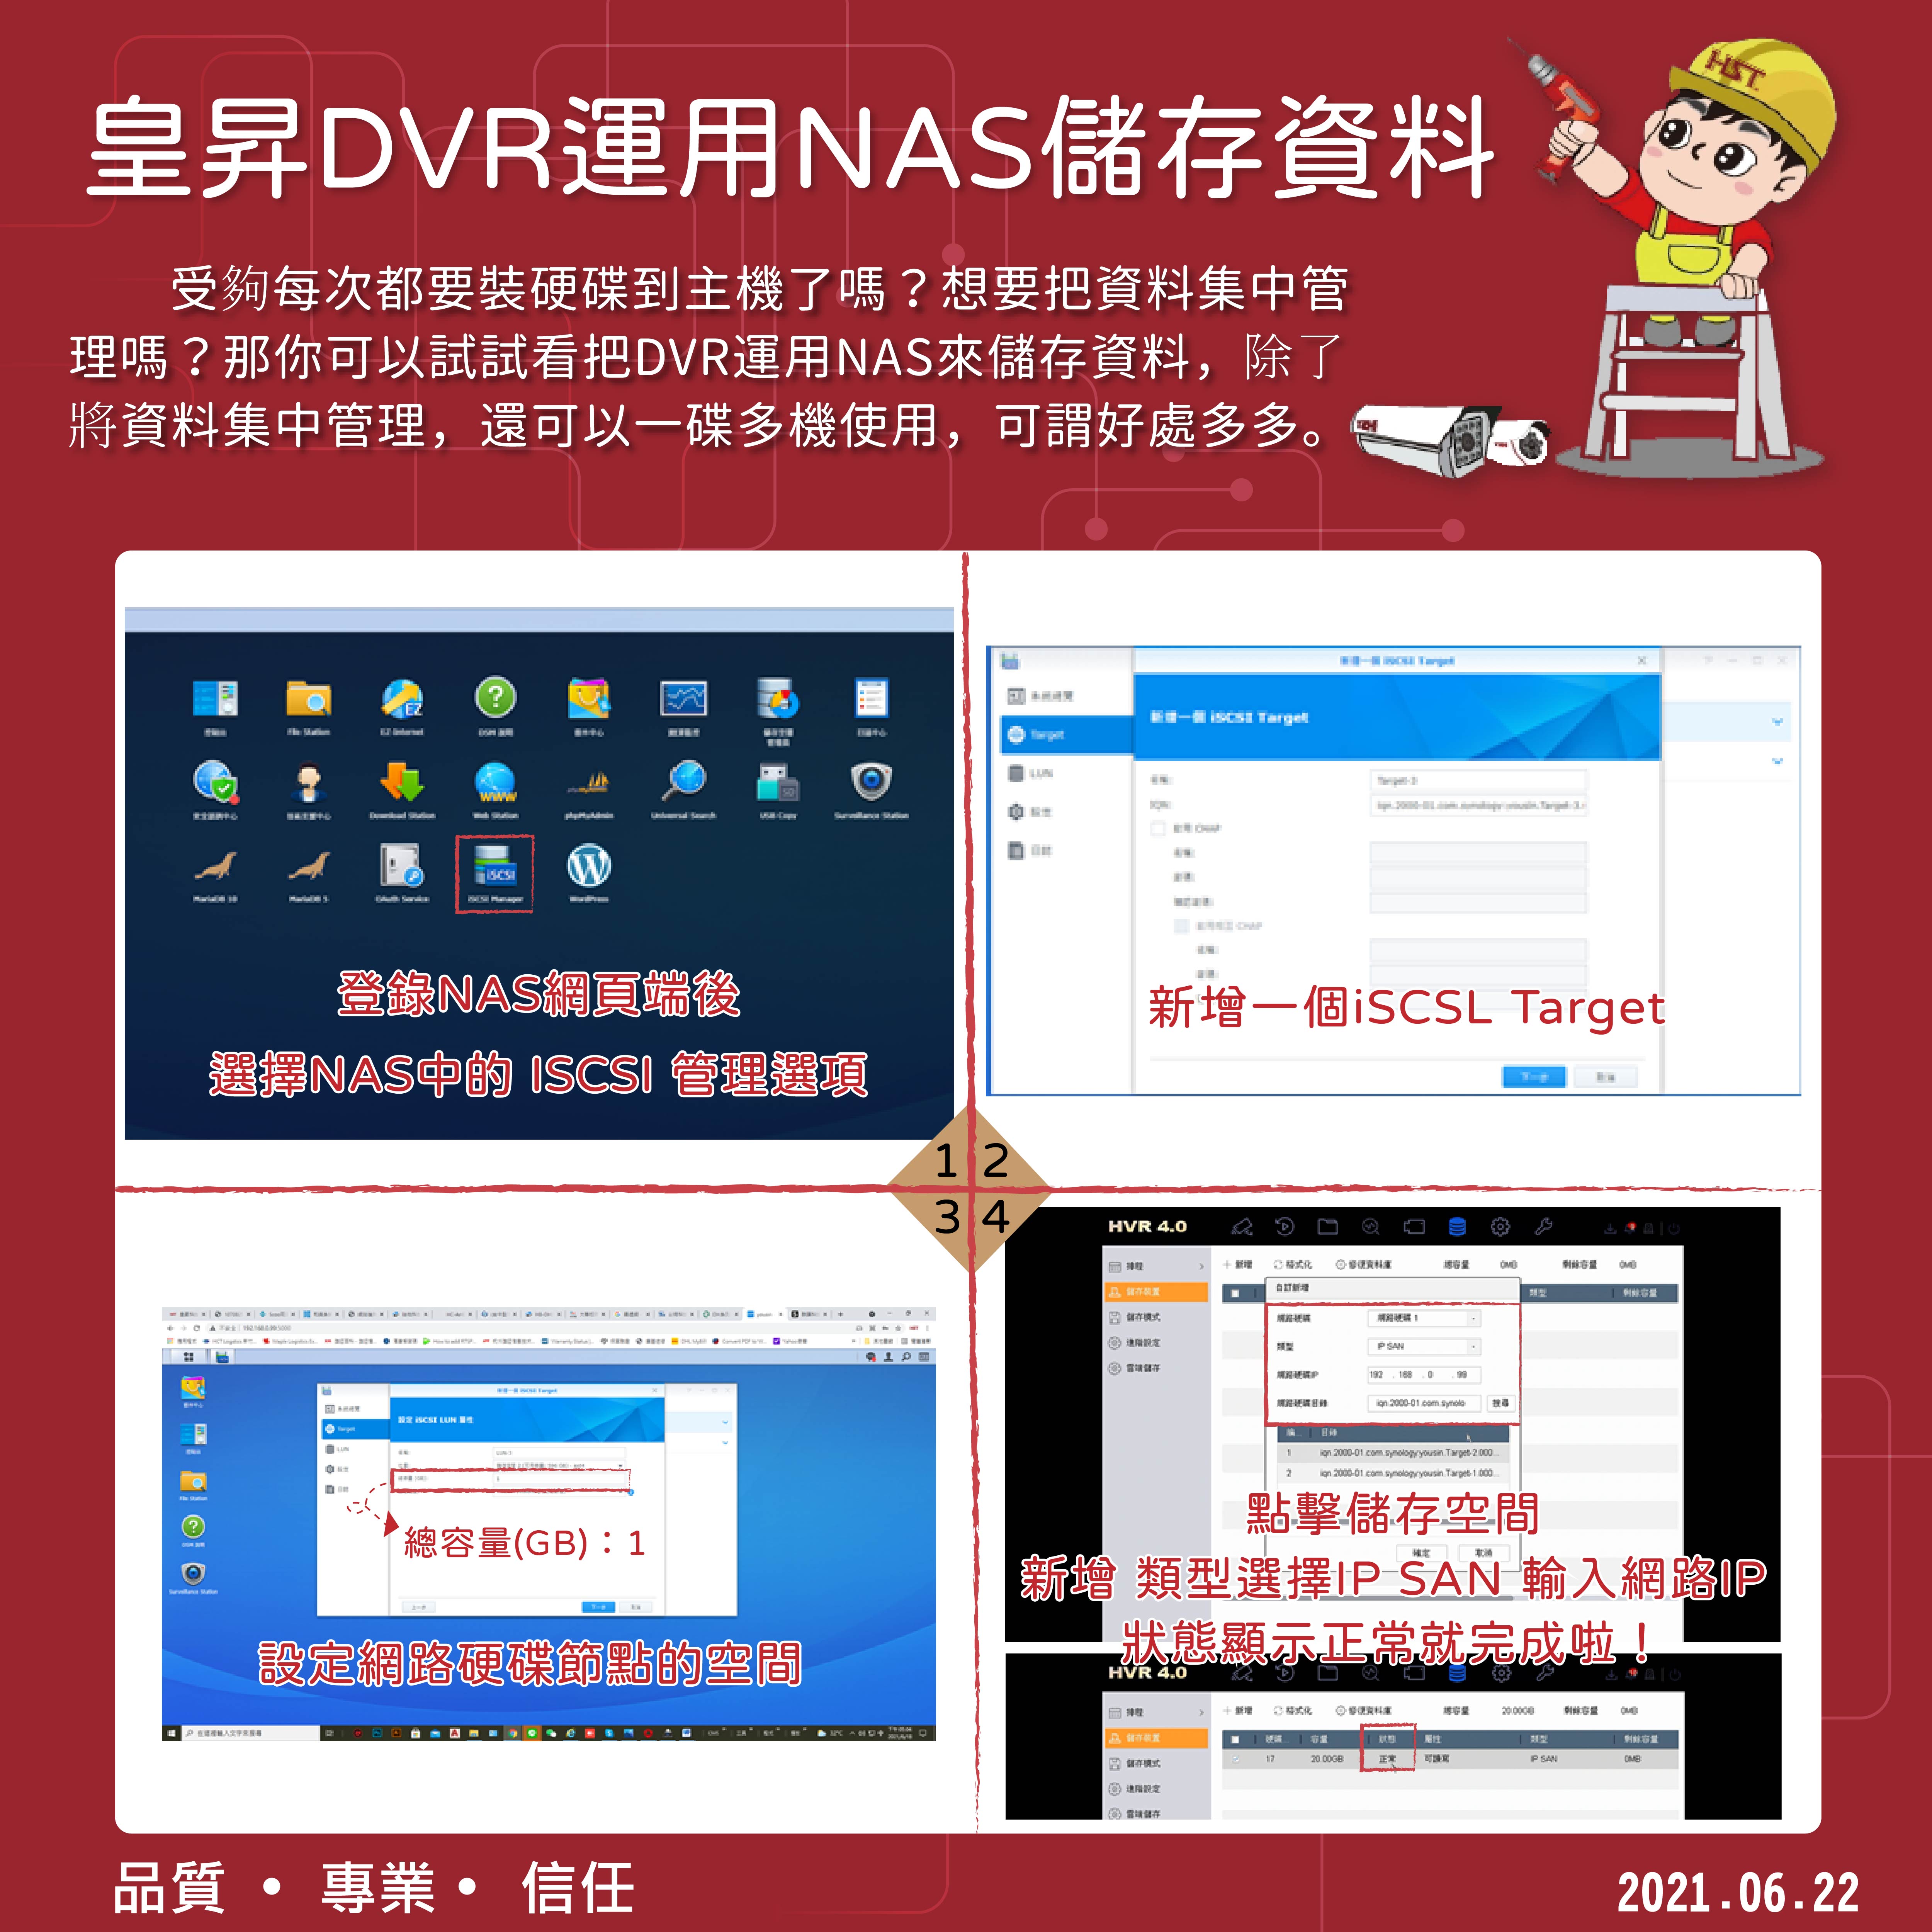 皇昇DVR運用NAS儲存資料